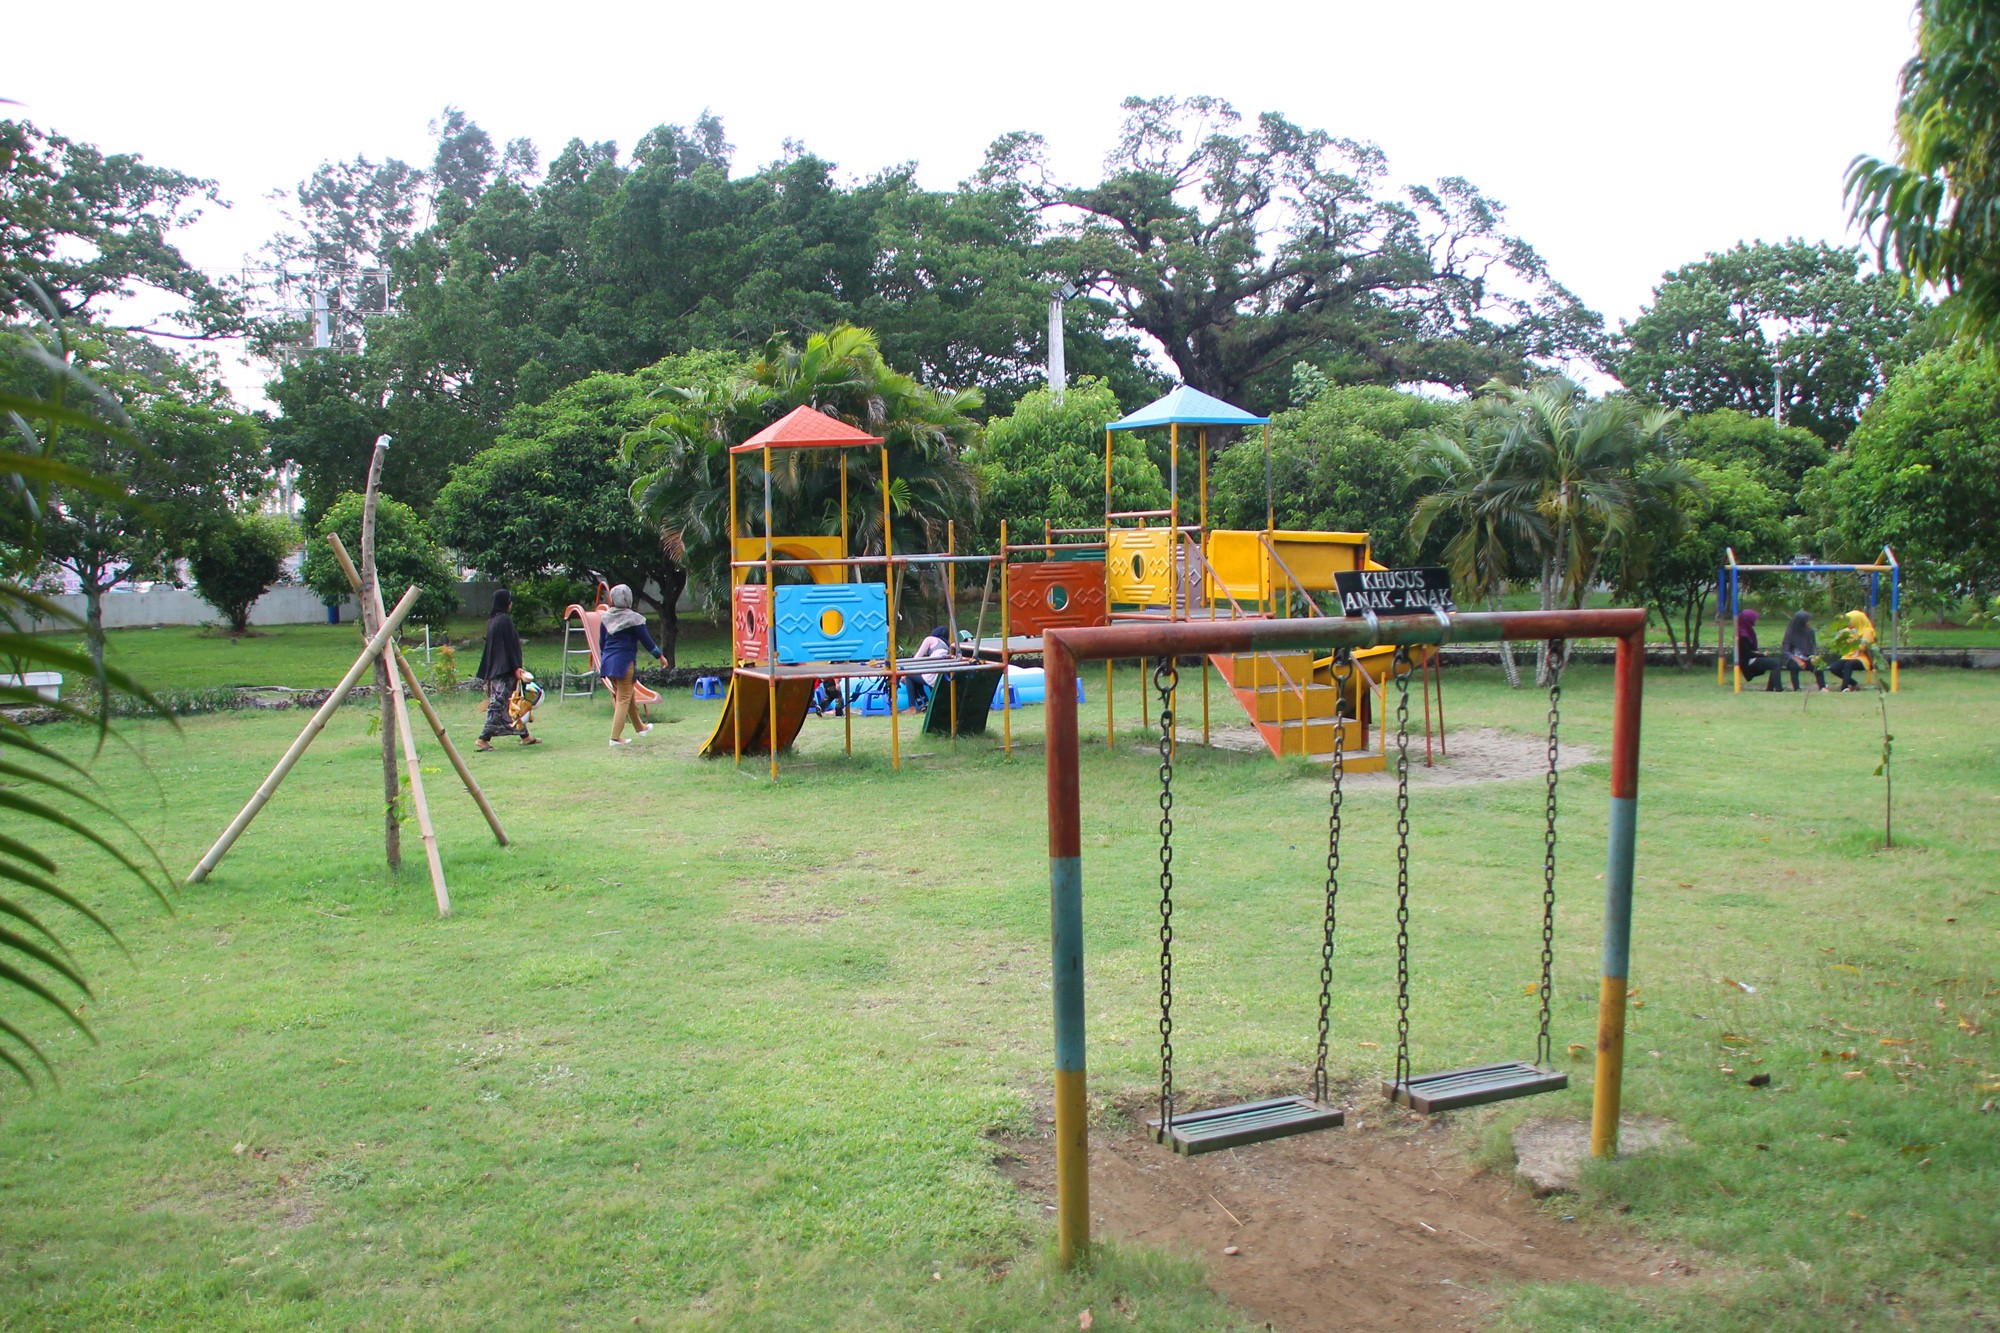 Arena bermain bagi anak-anak melengkapi Taman Putroe Phang sebagai wahana wisata taman kota